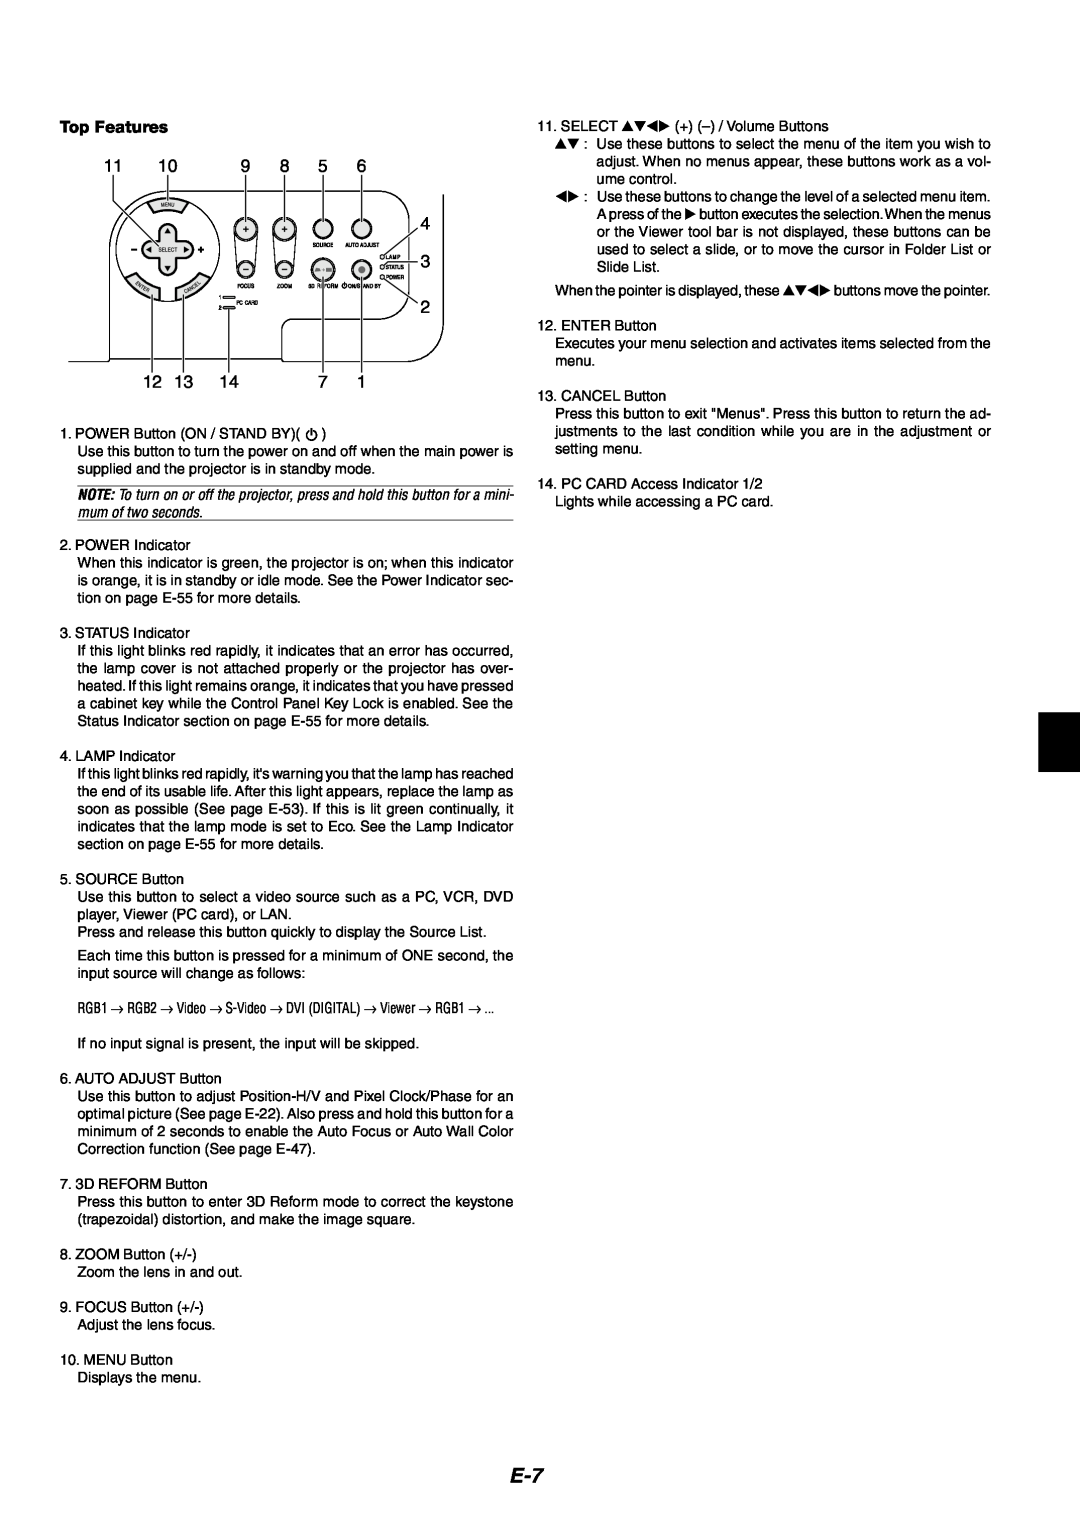 NEC MT1065/MT1060 user manual Top Features 